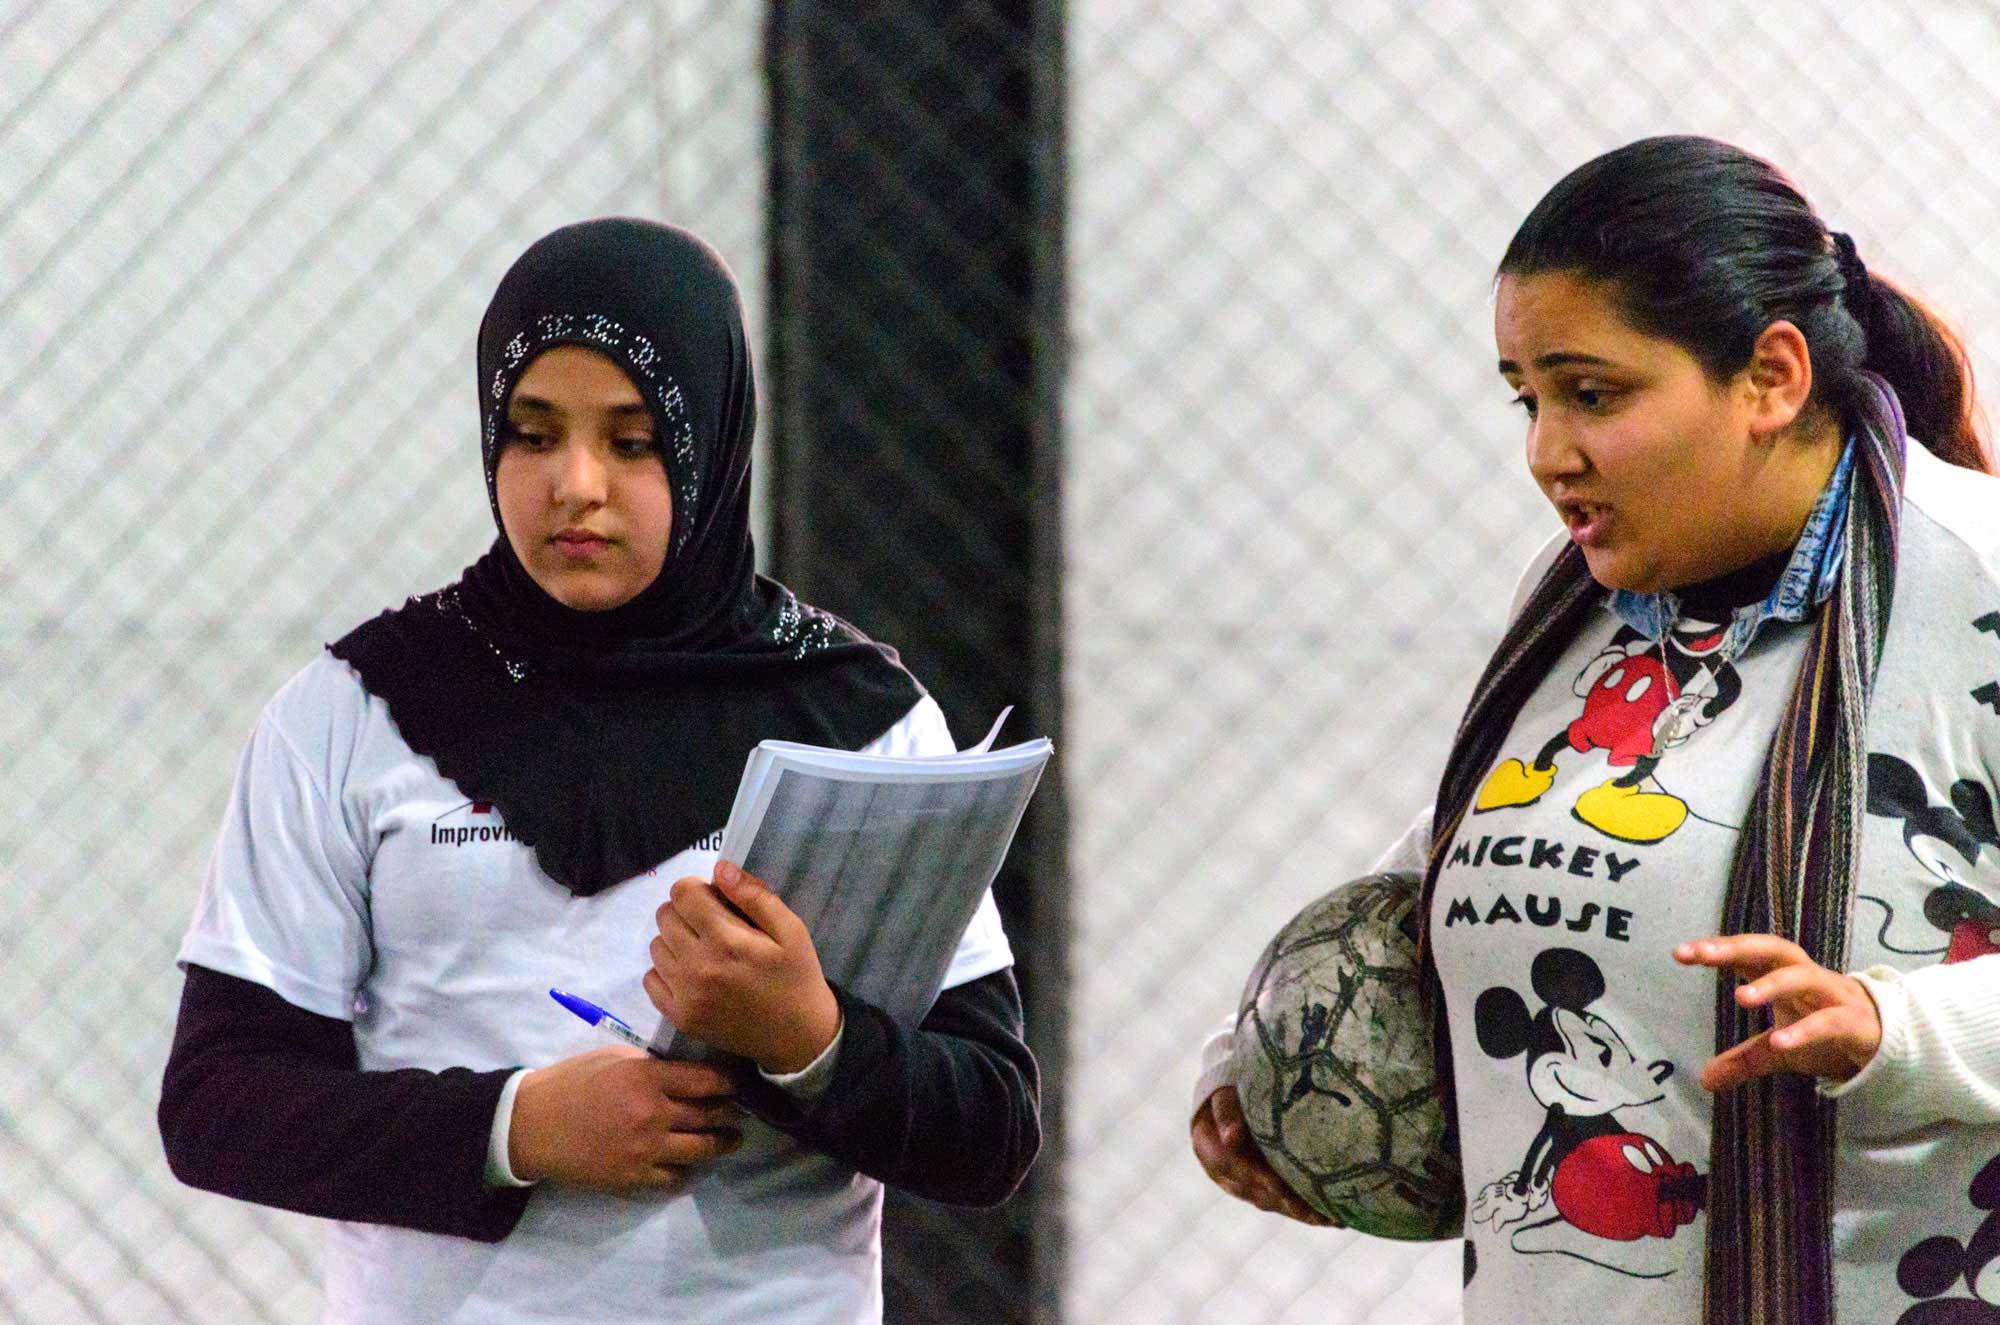 In “Football3” Program, Refugee Girls Assert Their Rights | Anera